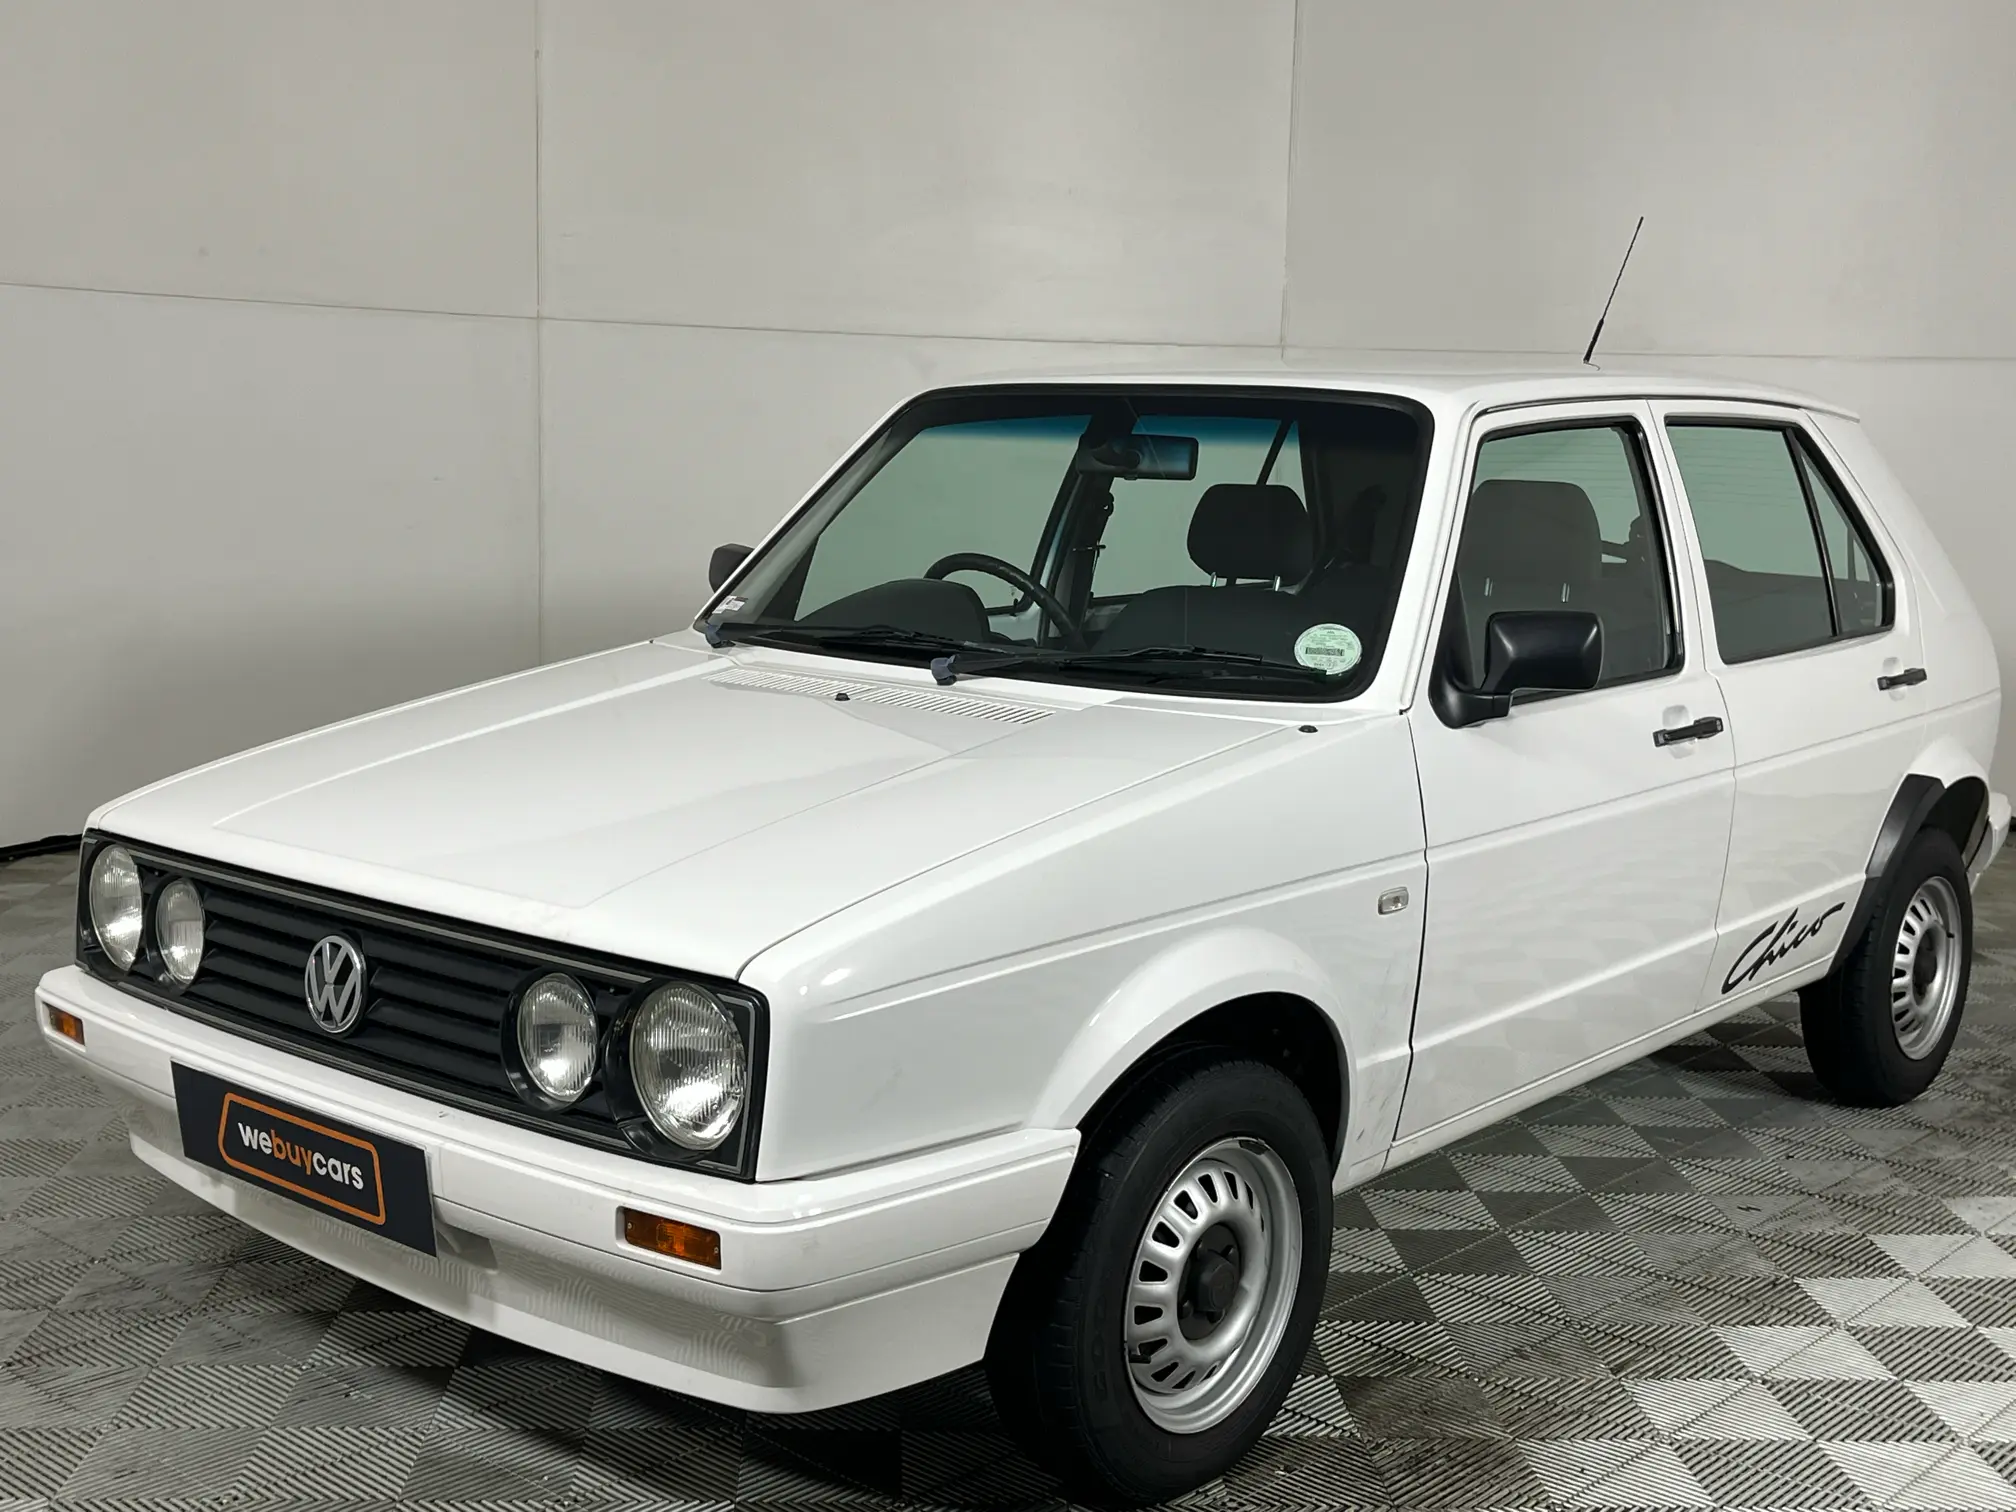 2004 Volkswagen Citi Chico 1.4